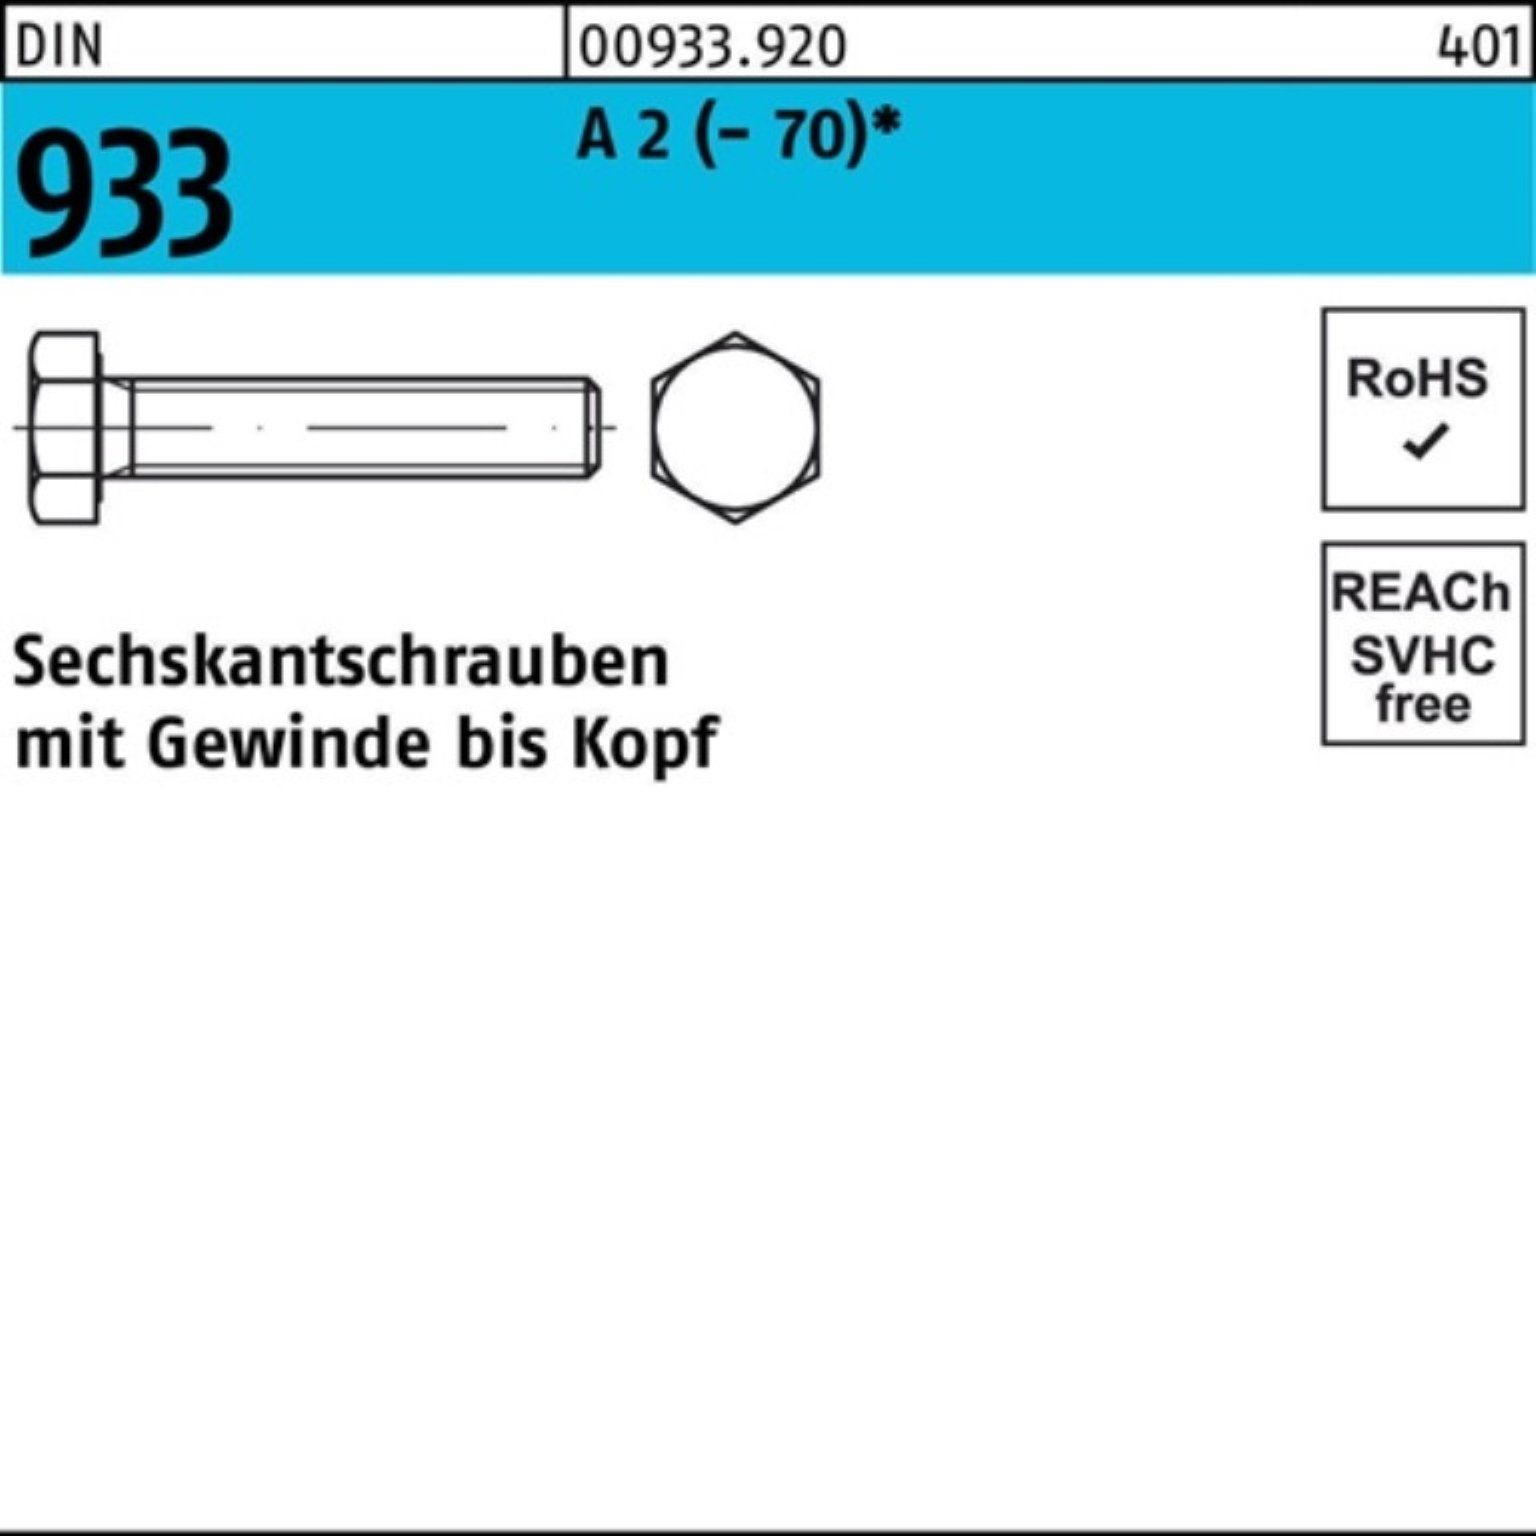 Reyher Sechskantschraube 200er Pack Sechskantschraube DIN 933 VG M8x 16 A 2 (70) 200 Stück D